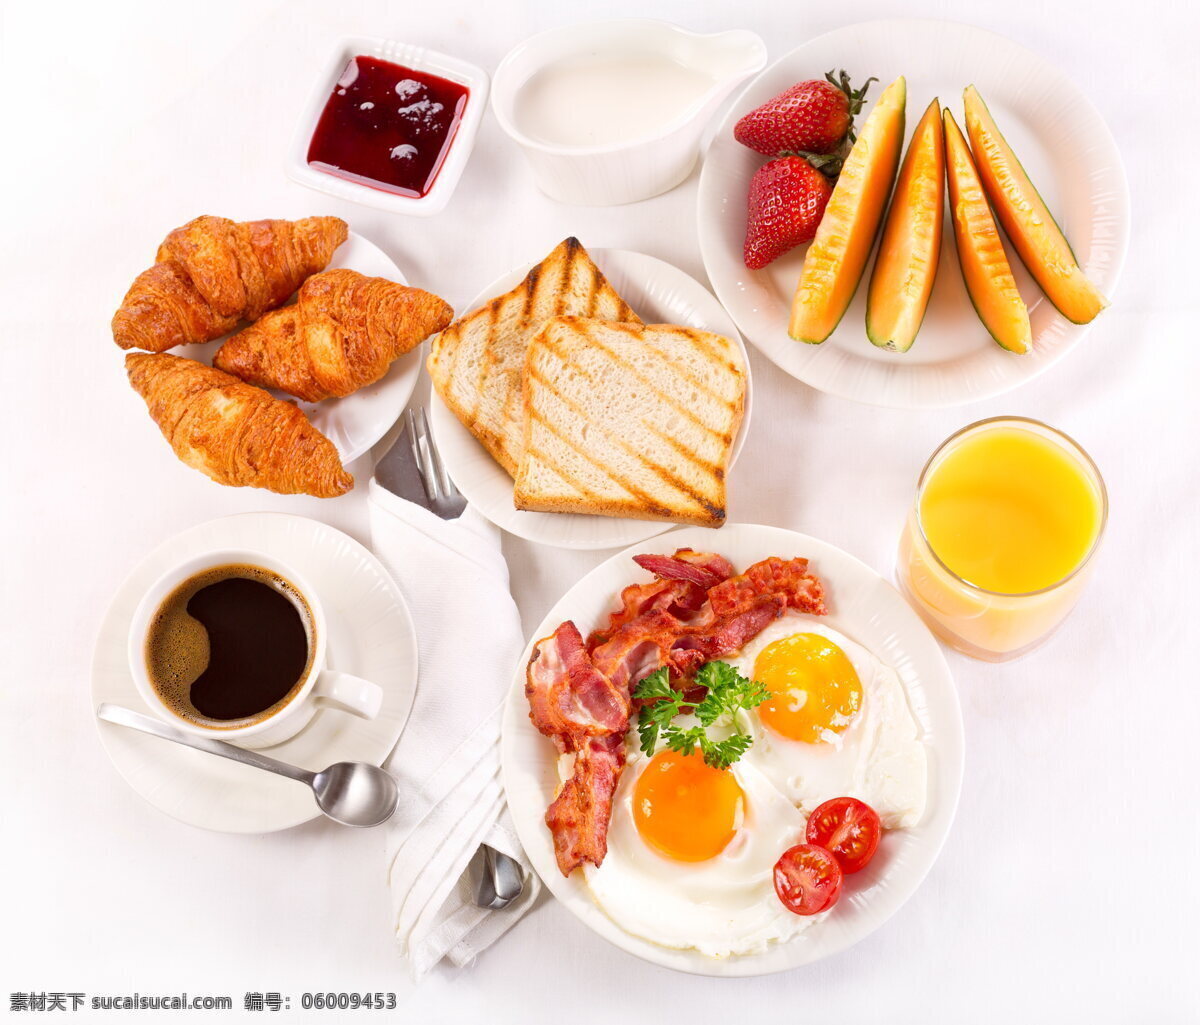 西式早餐 爱心早餐 早餐 早点 面包 饮料